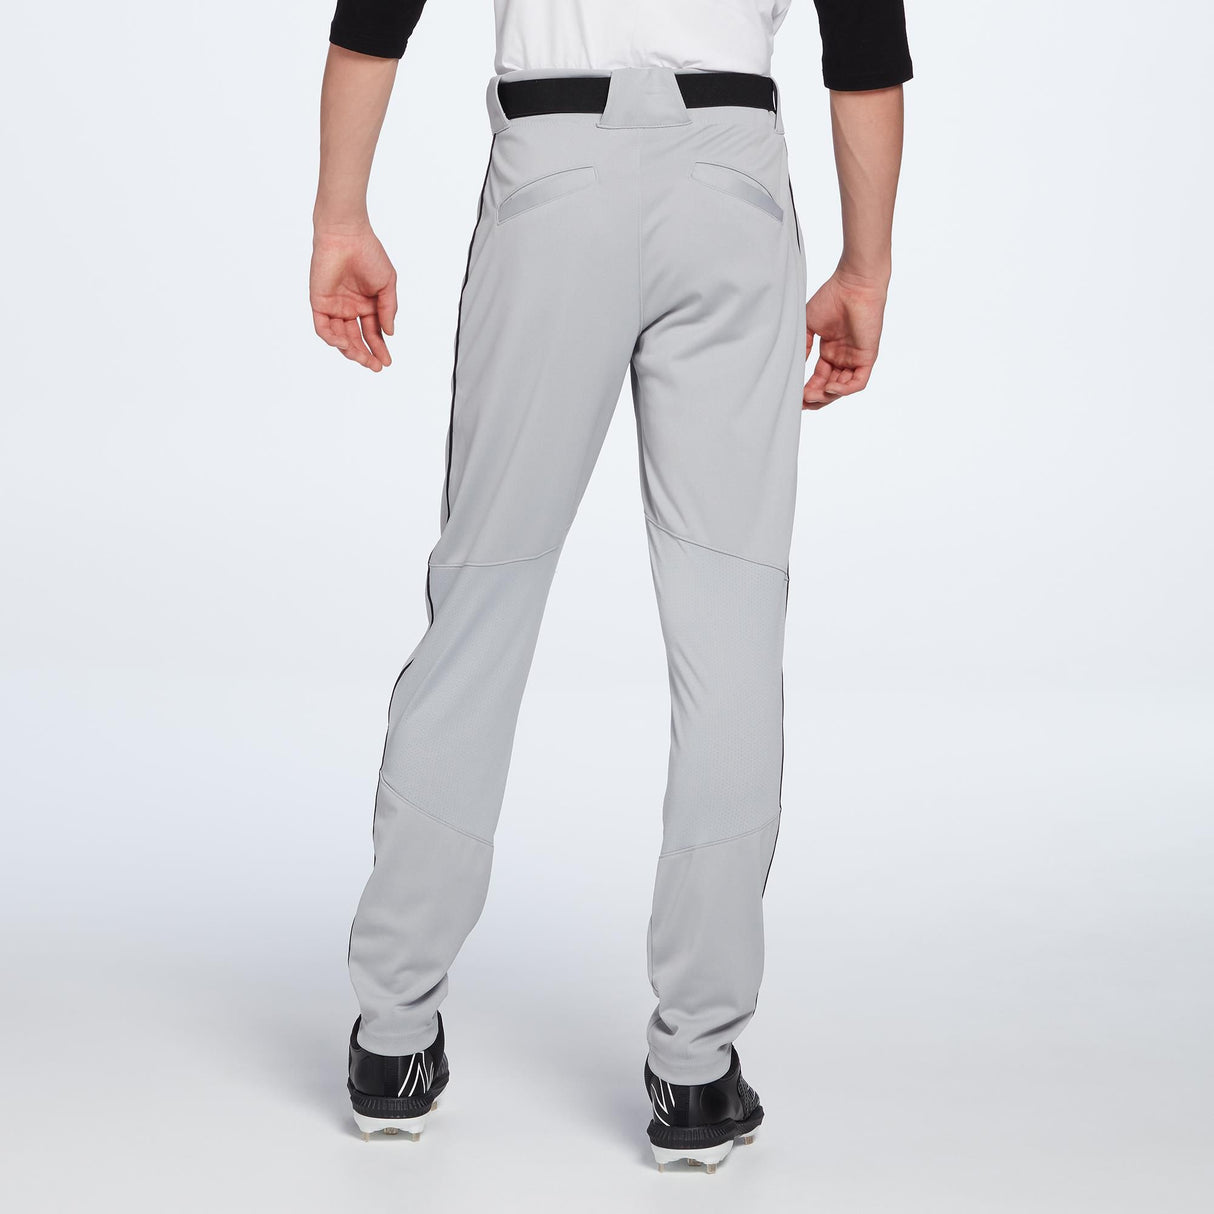 Nike Vapor Select Men's Baseball Pants.